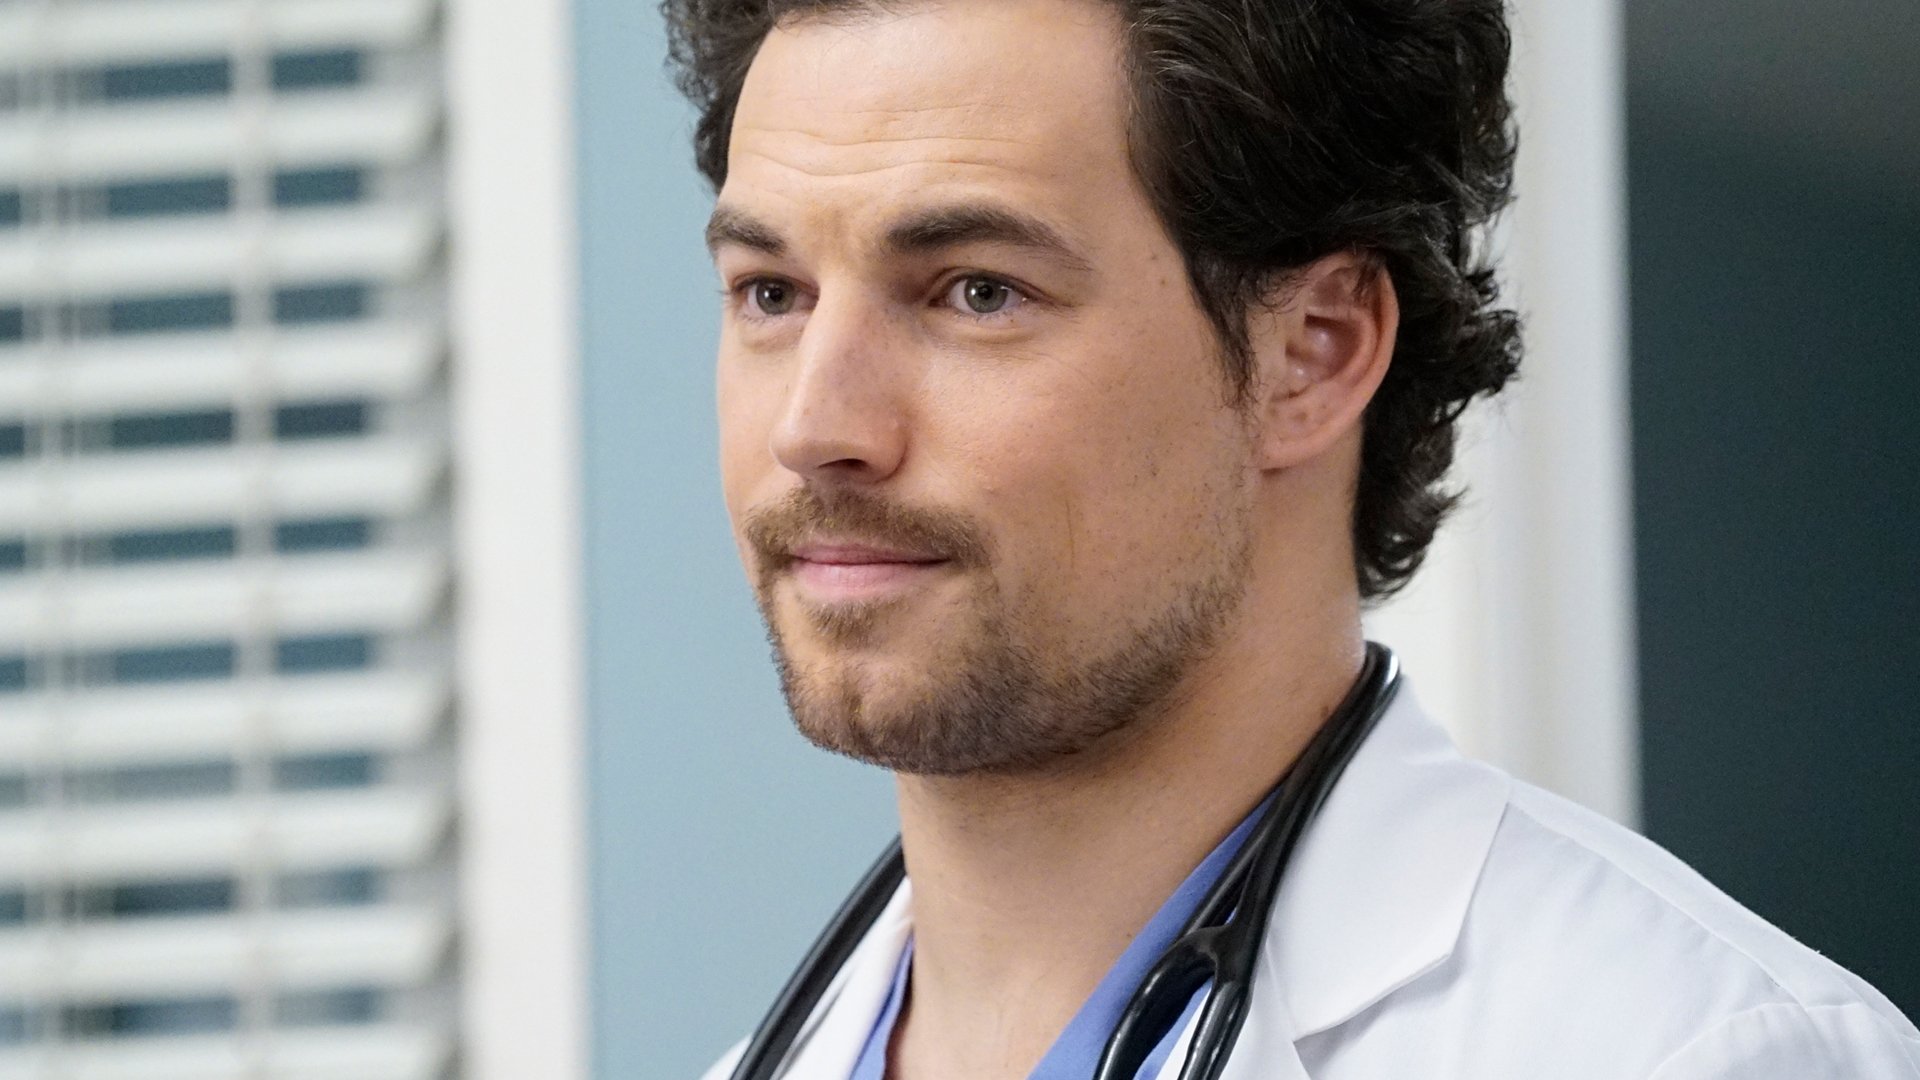 Giacomo Gianniotti as Andrew DeLuca on 'Grey's Anatomy' Season 16